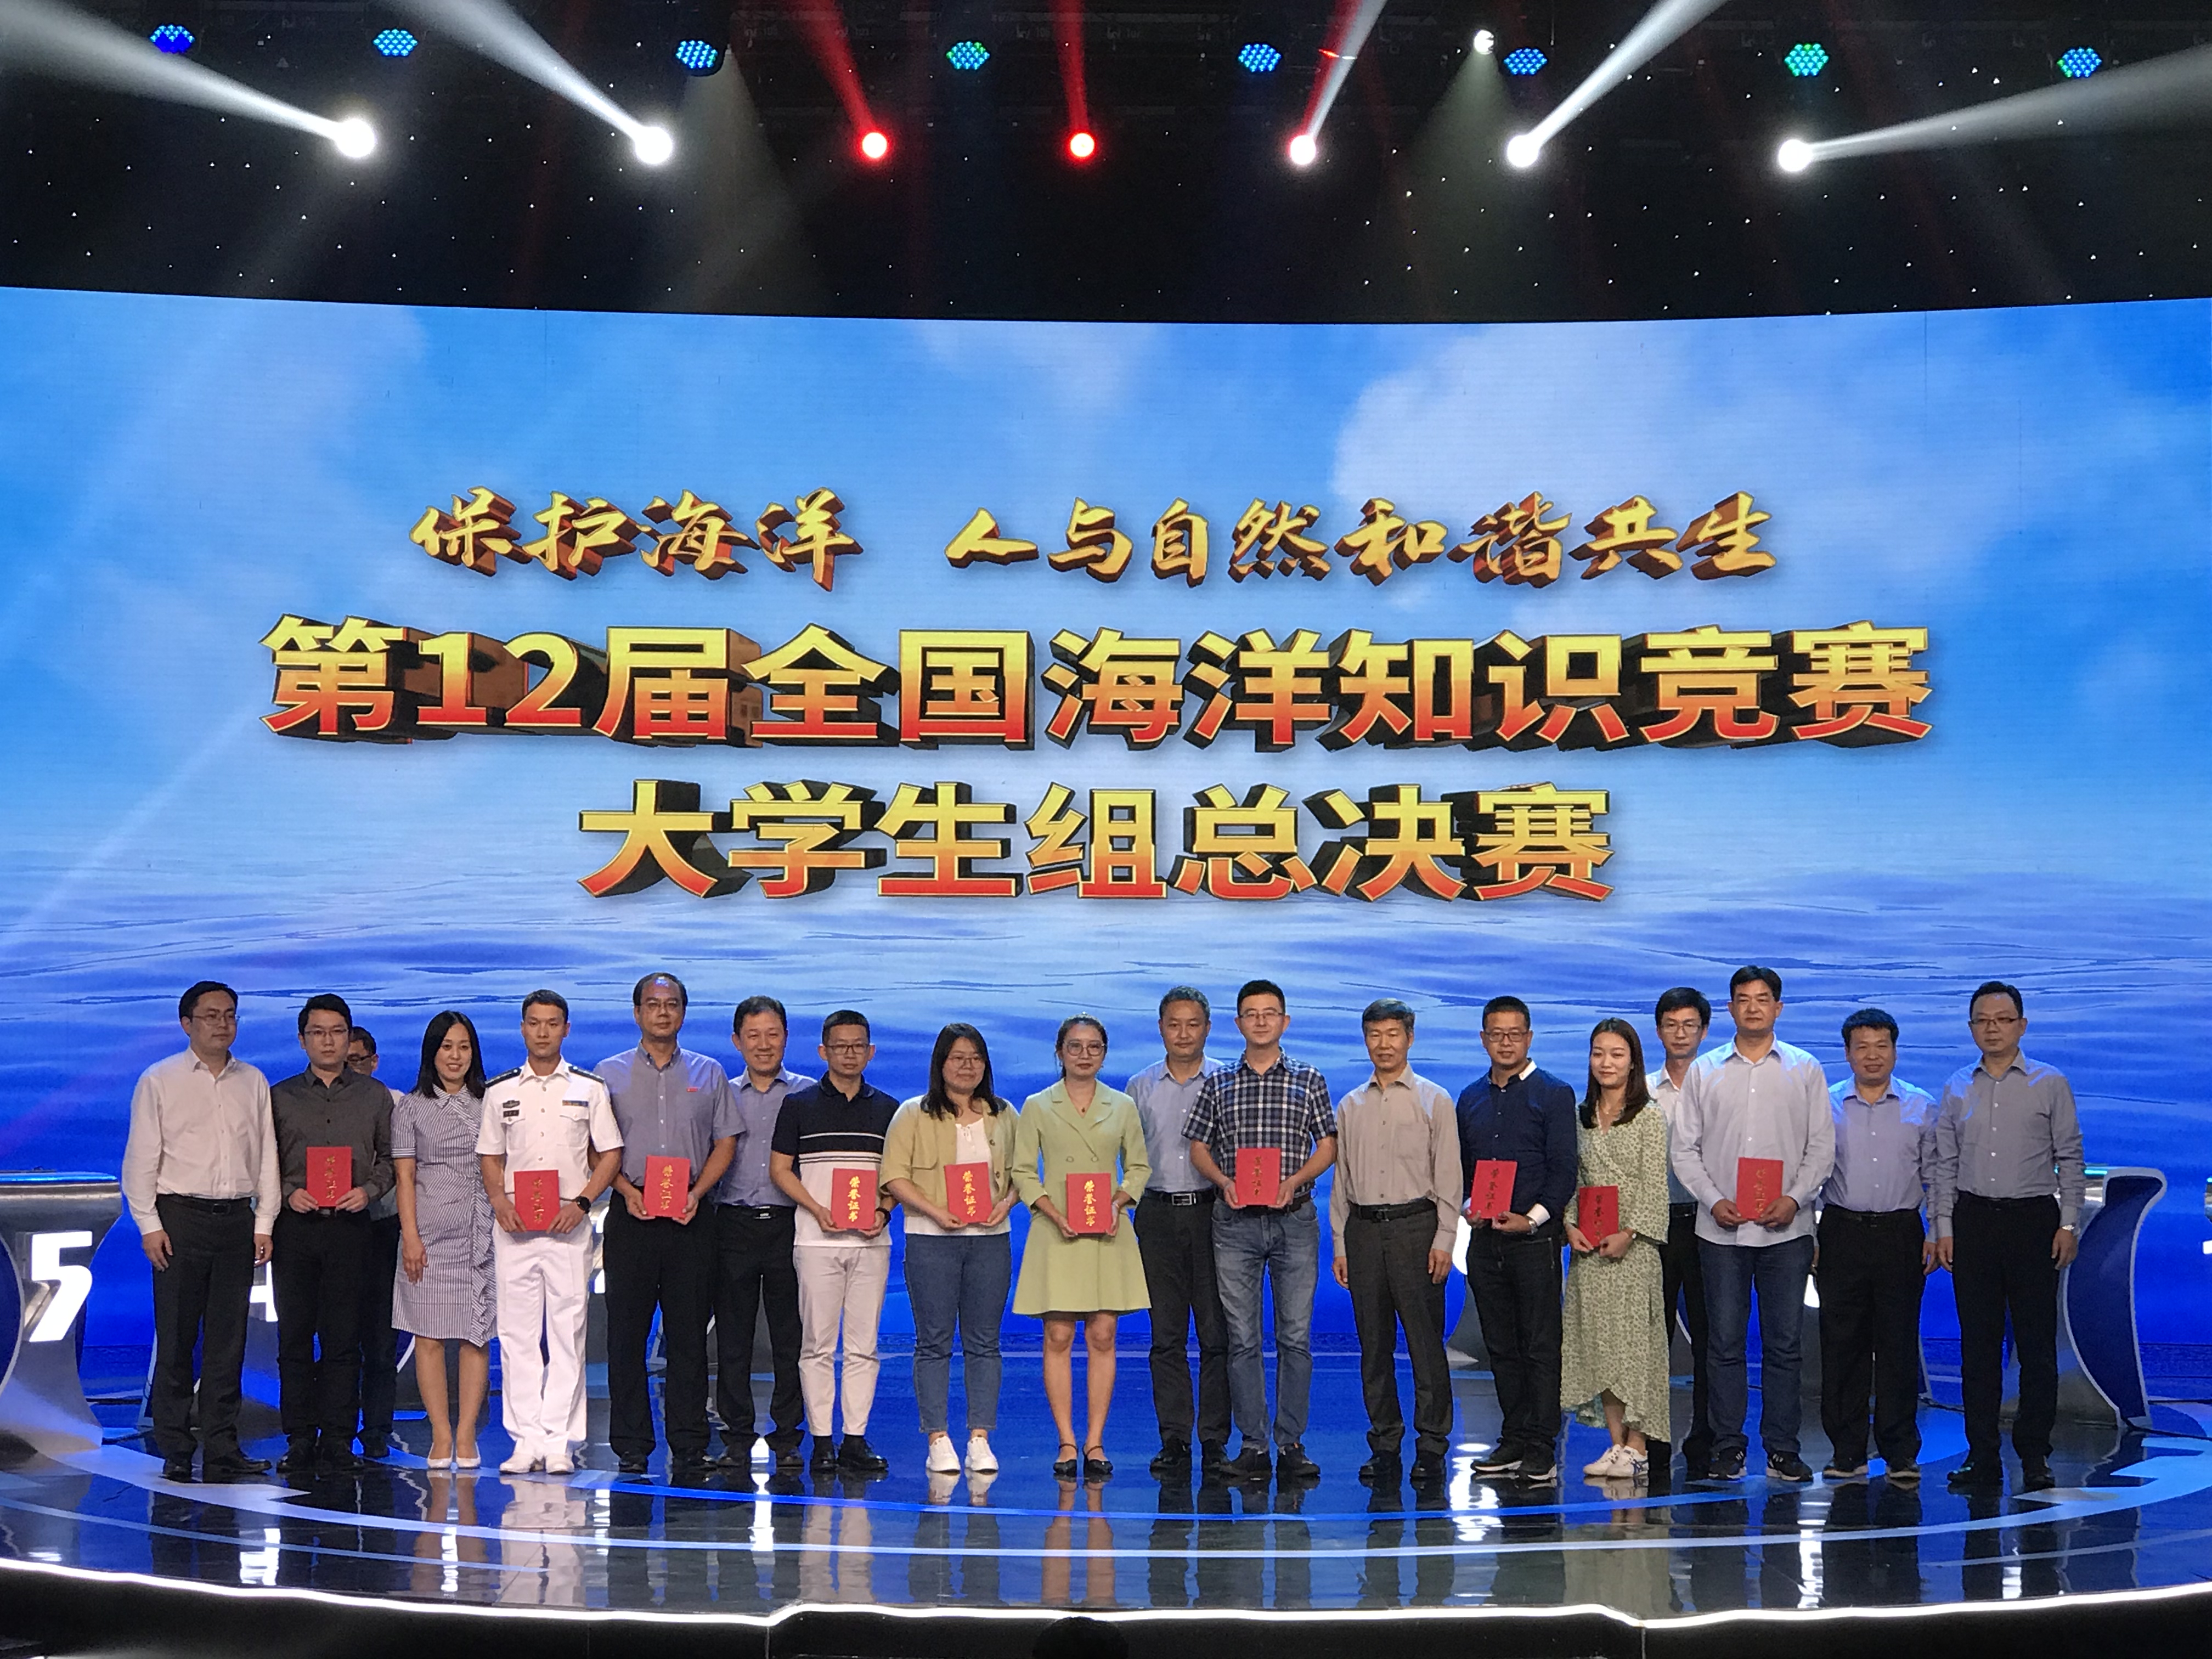 南京师范大学学子在第12届全国大学生海洋知识竞赛中获佳绩